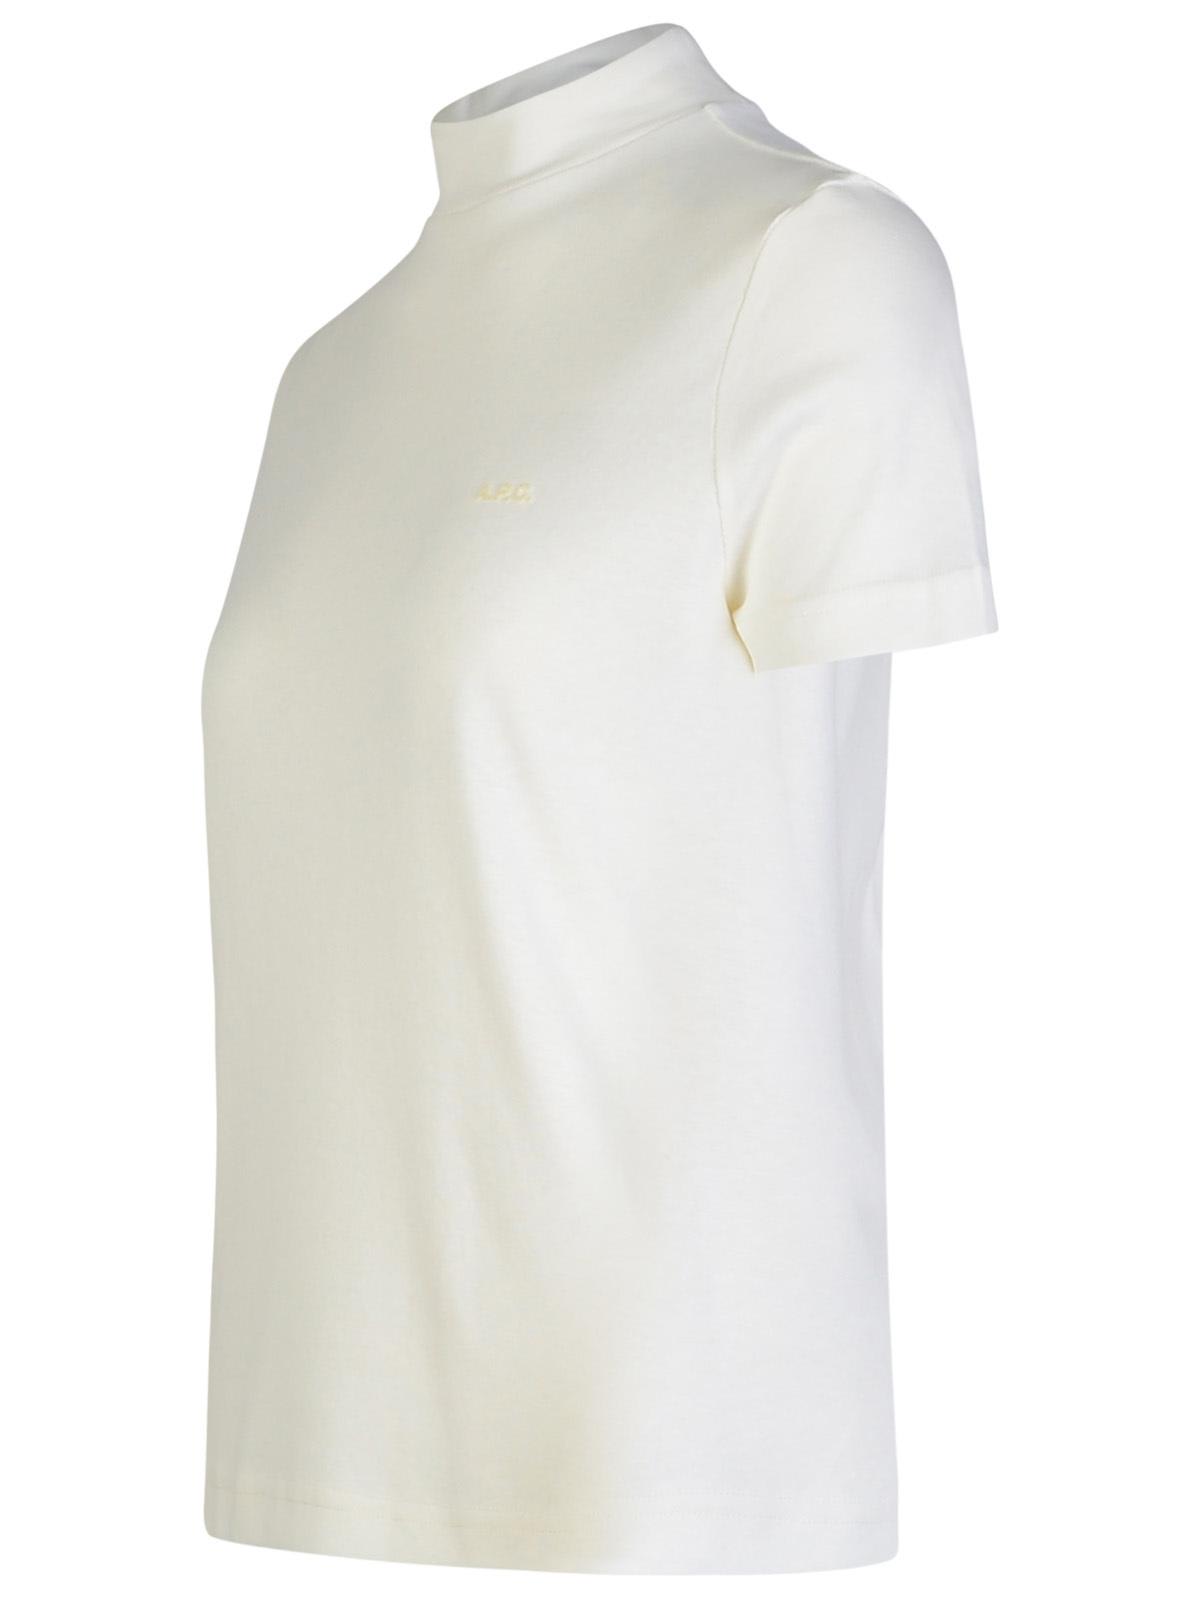 Shop Apc Caroll White Cotton T-shirt